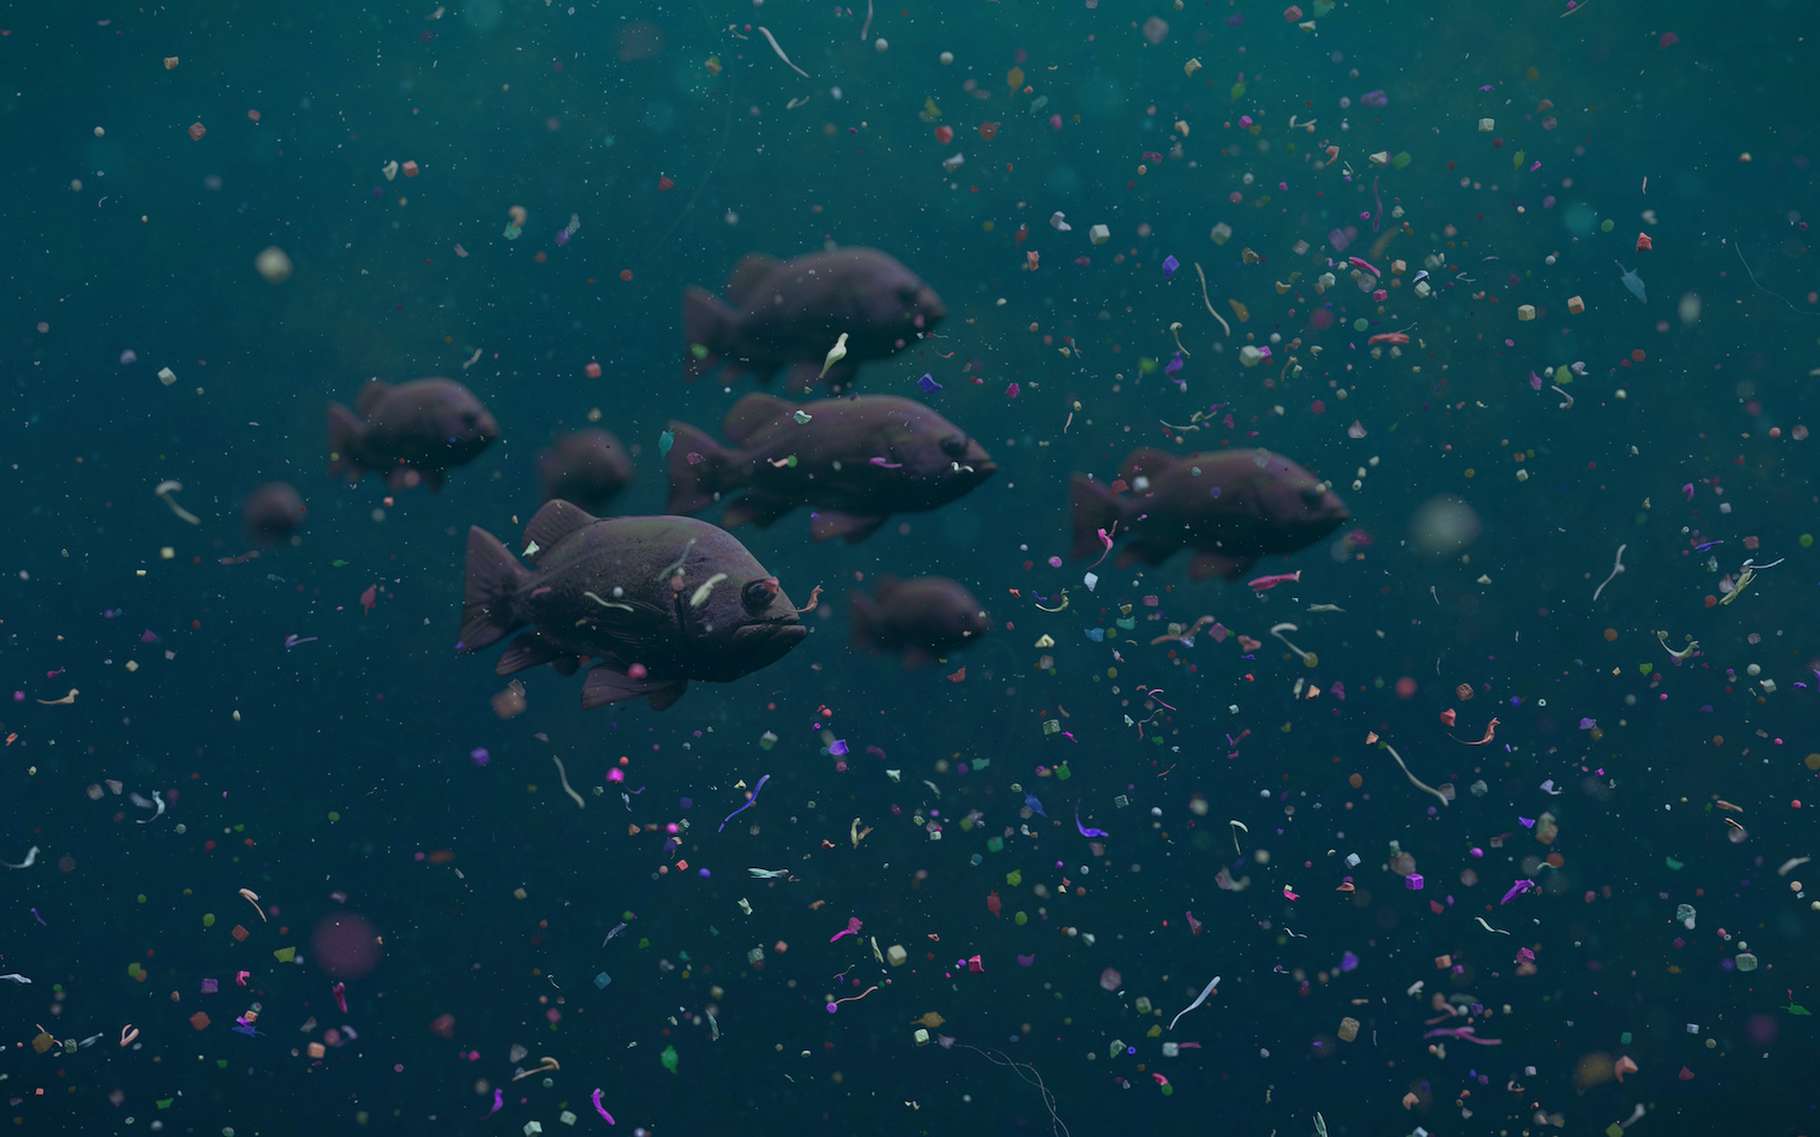 Ces poissons-là nagent dans un océan de déchets plastiques. Mais le petit robot, lui aussi en forme de poisson, inventé par une équipe de l’université du Sichuan (Chine) pourrait bien aider à nettoyer leur environnement. © dottecyeti, Adobe Stock